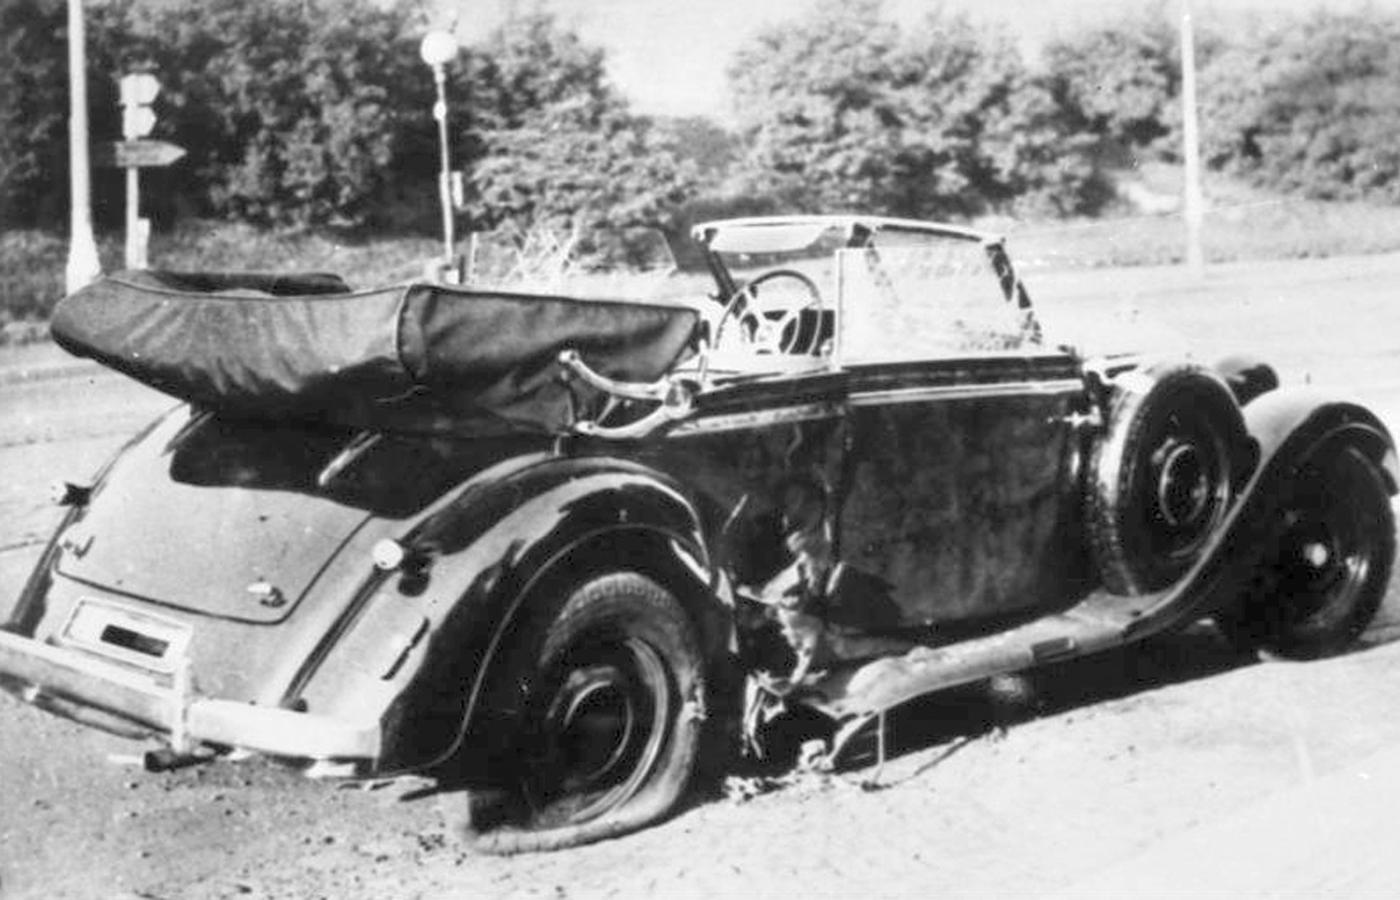 Nieopancerzony Mercedes, którym jechał Heydrich w dniu zamachu.